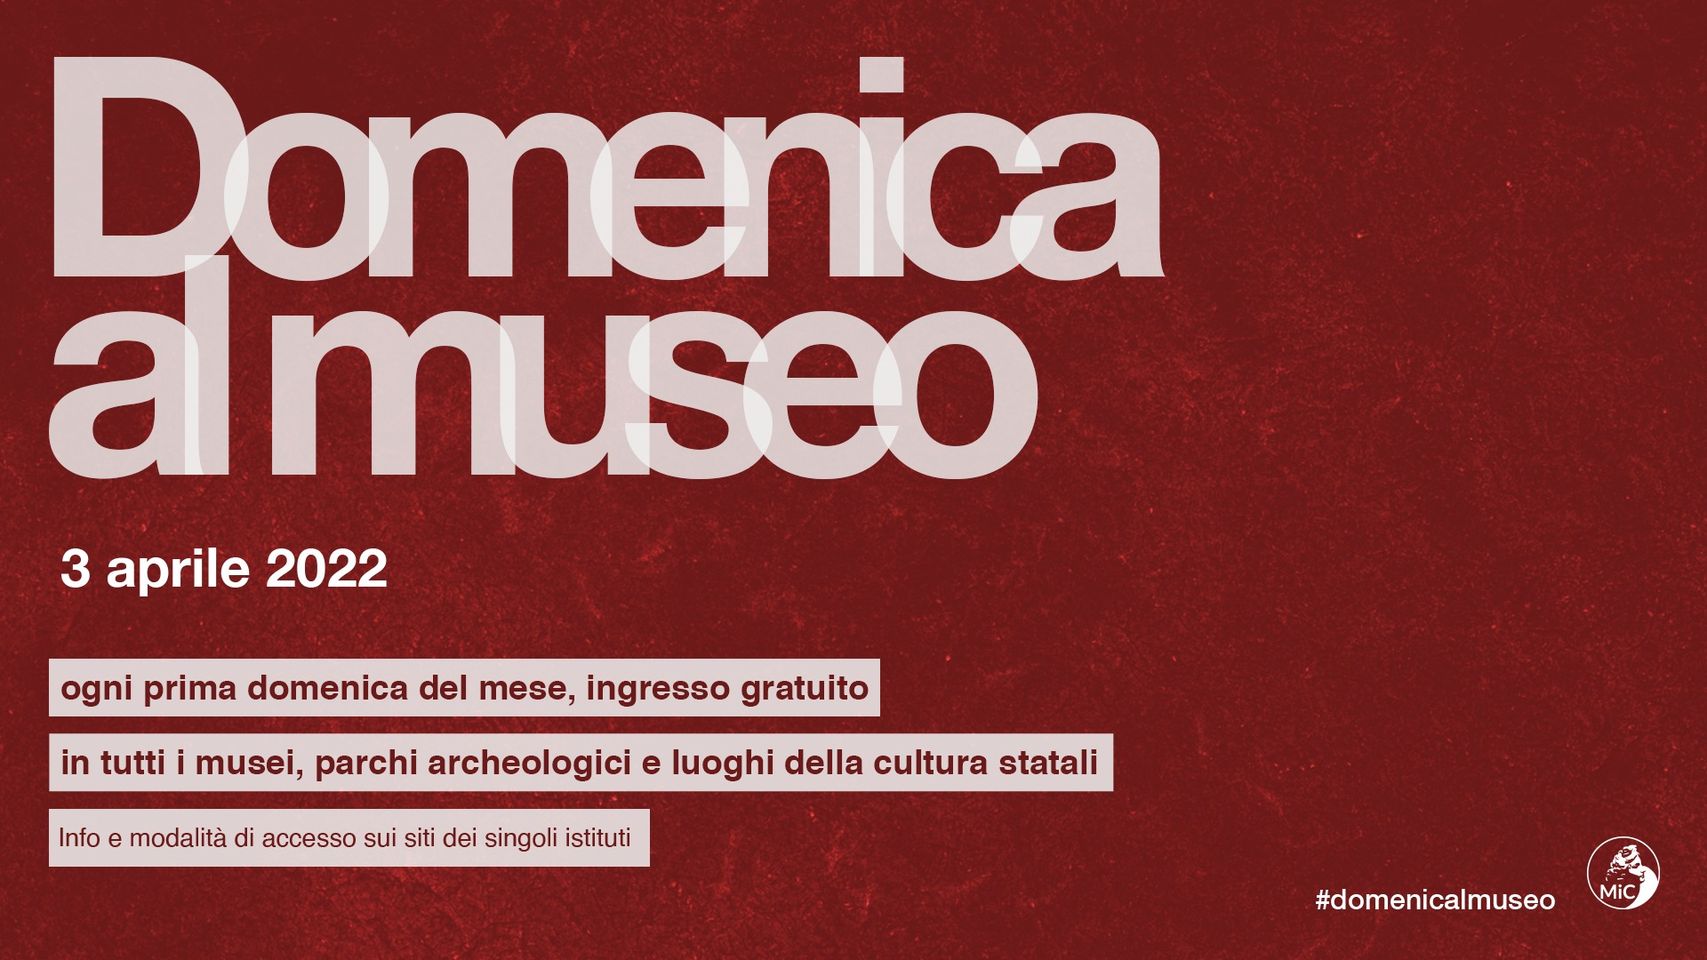 Il 3 aprile tornano le domeniche gratuite nei musei statali. A Benevento il Teatro Romano aperto dalle 9 alle 19